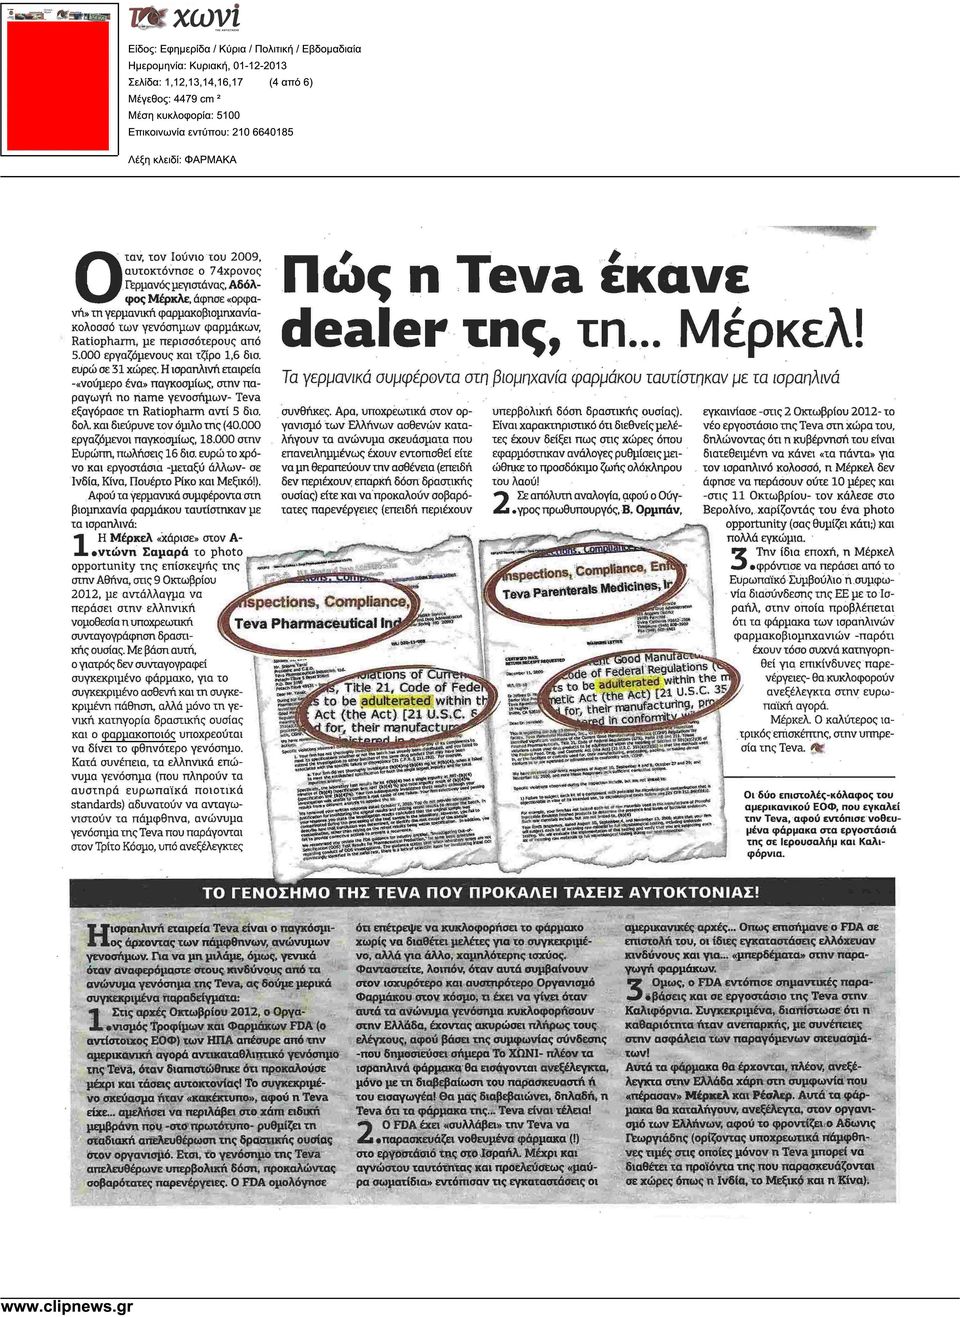 ευρω σε 31 χώρες. Η ισραηλινή εταιρεία -«νούµερο ένα» παγκοσµίως, στην παραγωγή no name γενοσήµων- Teva εξαγόρασε τη Ratiopharm αντί 5 δισ. δολ και διεύρυνε τον όµιλο της (40.